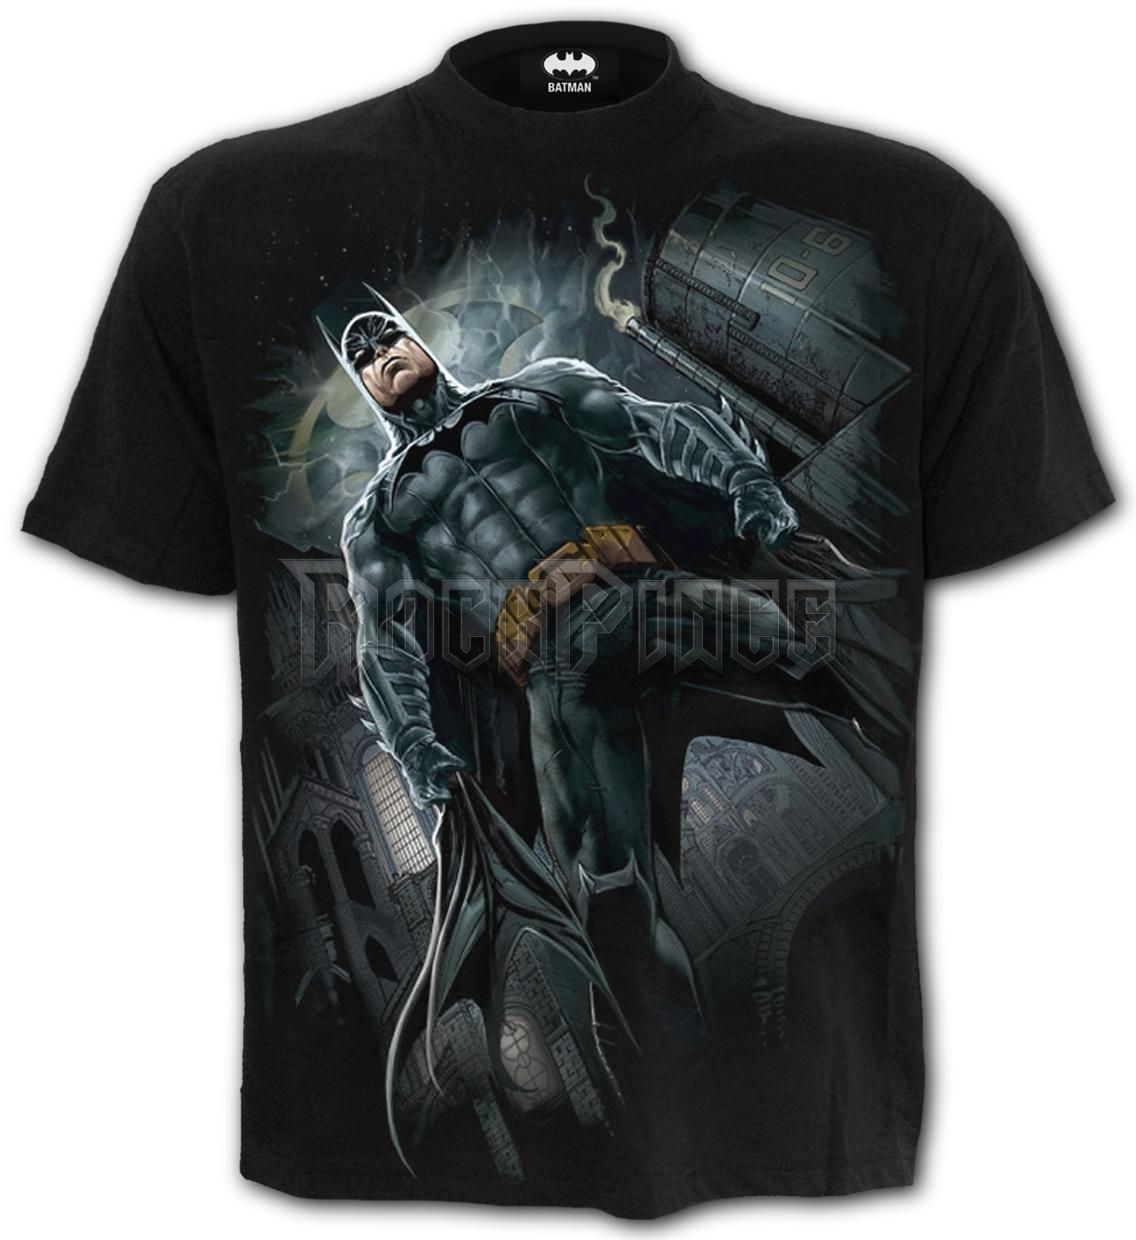 BATMAN - CALL OF THE KNIGHT - T-Shirt Black - G401M101